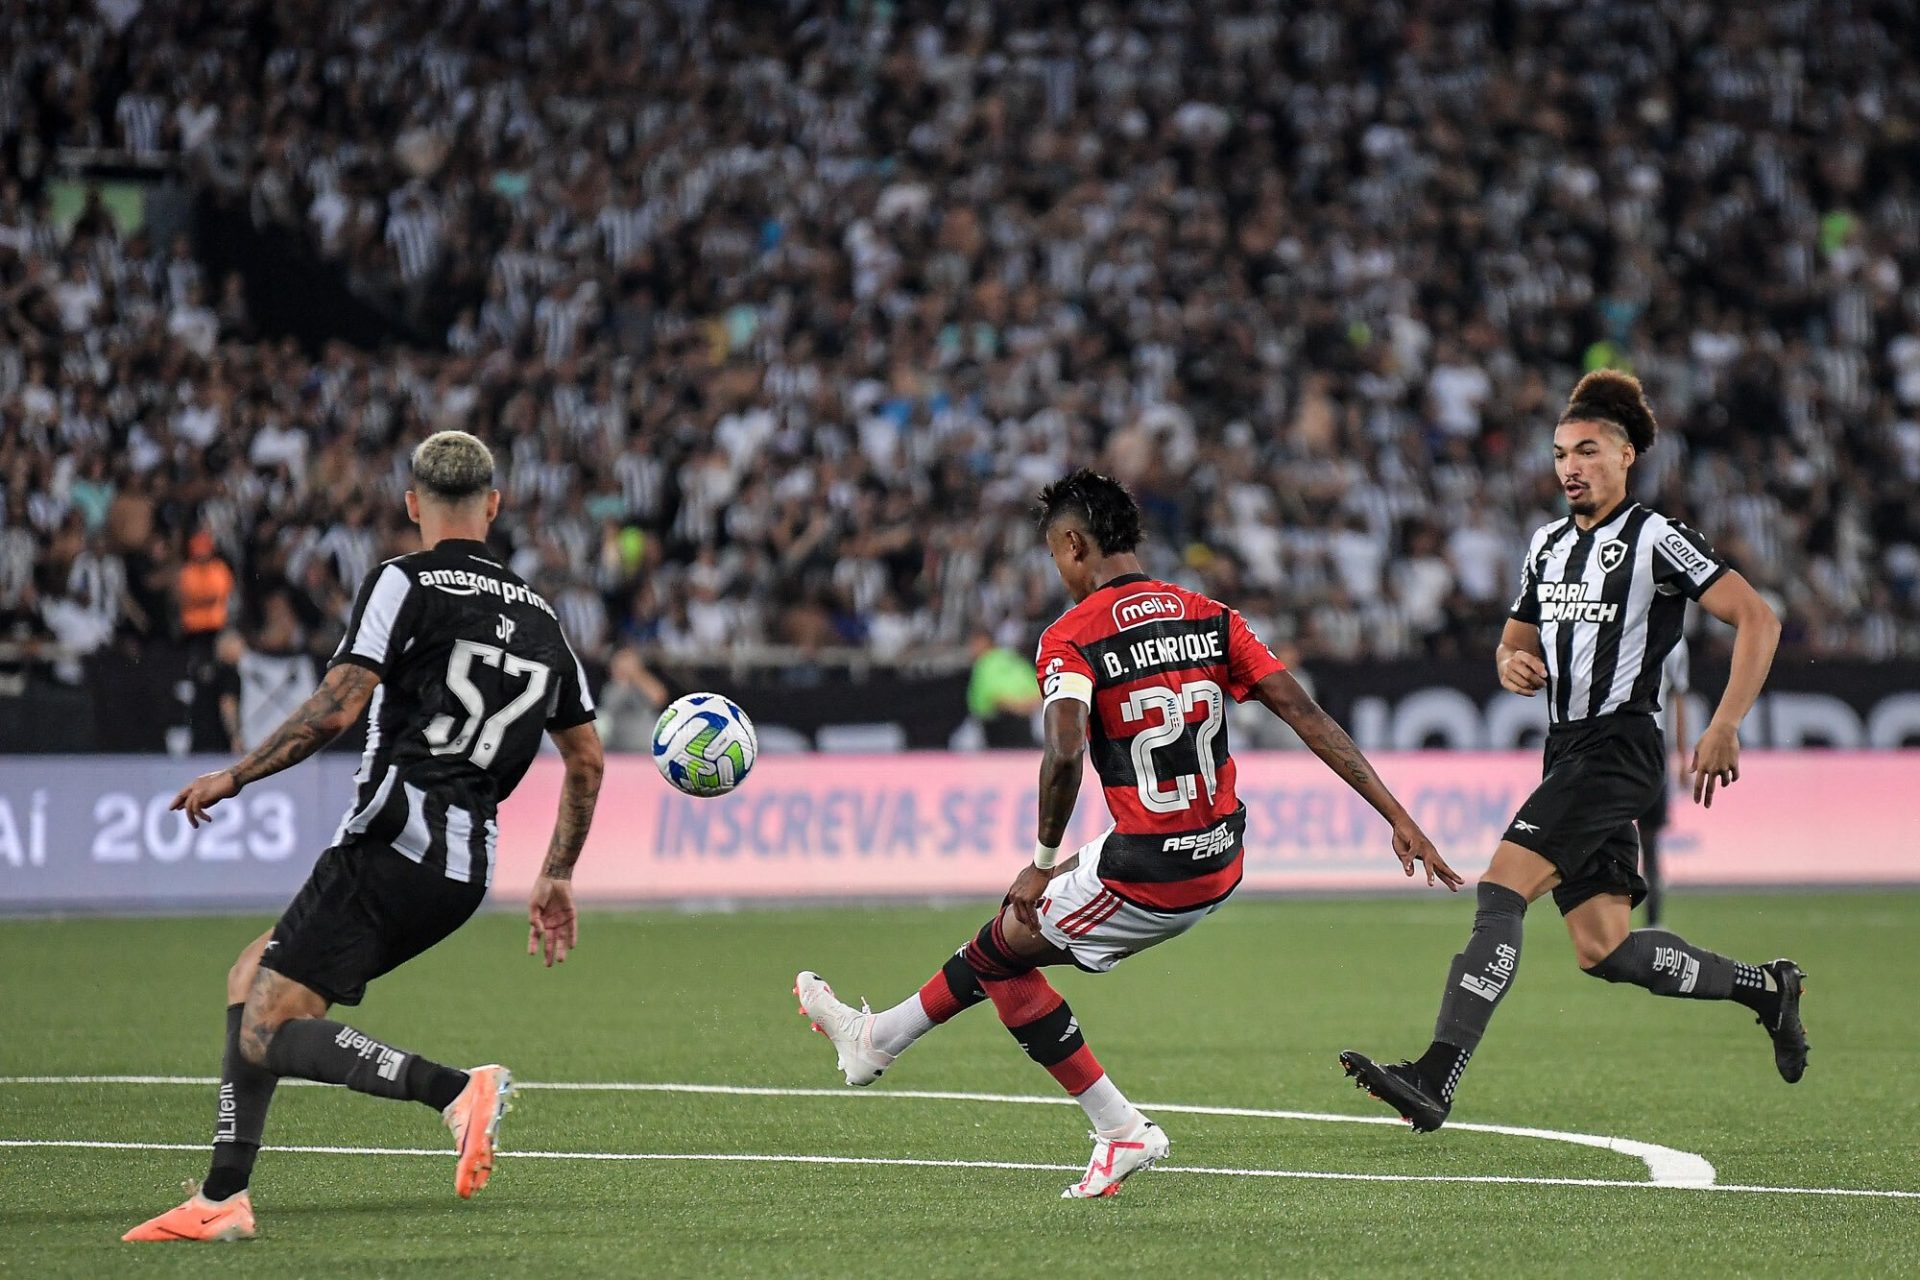 O Botafogo ainda não havia perdido em casa neste campeonato